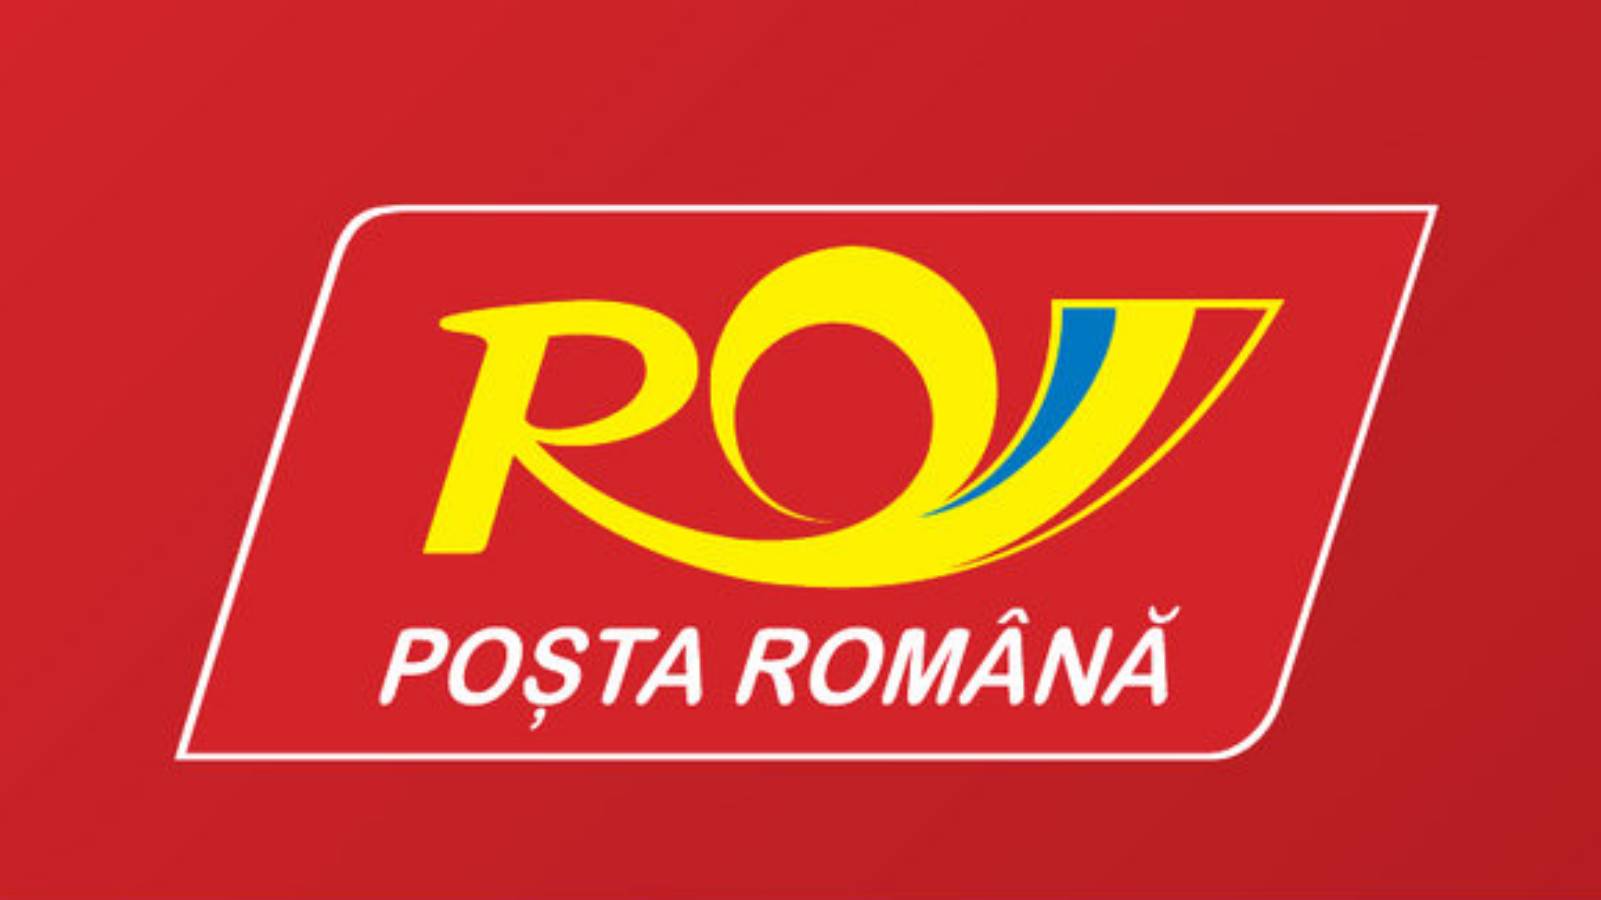 Det rumänska postkontoret erbjuder förpackningar på sina kontor för alla försändelser